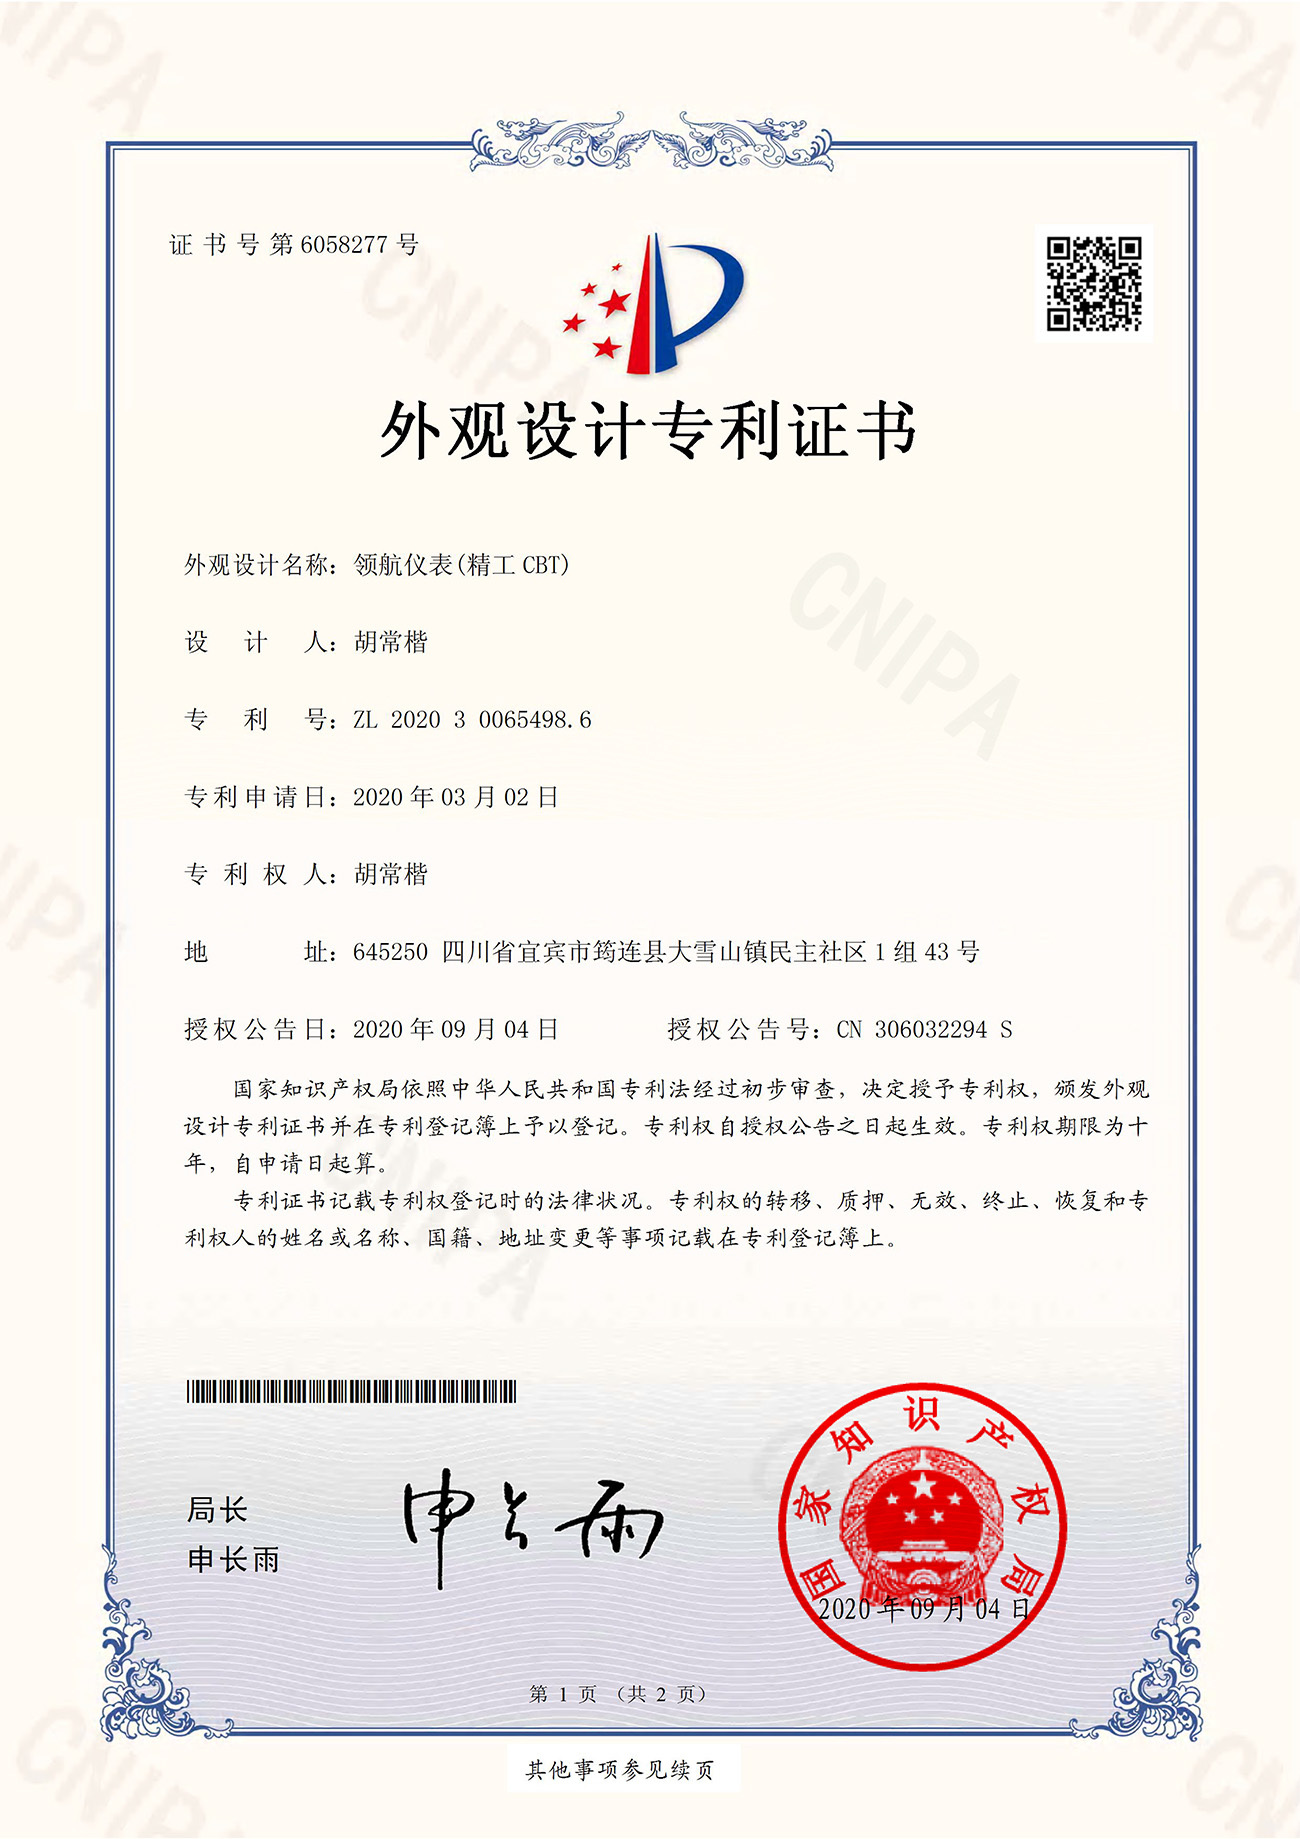 Certificate-Hu Changkai-Pilot Instrument (Seiko CBT)